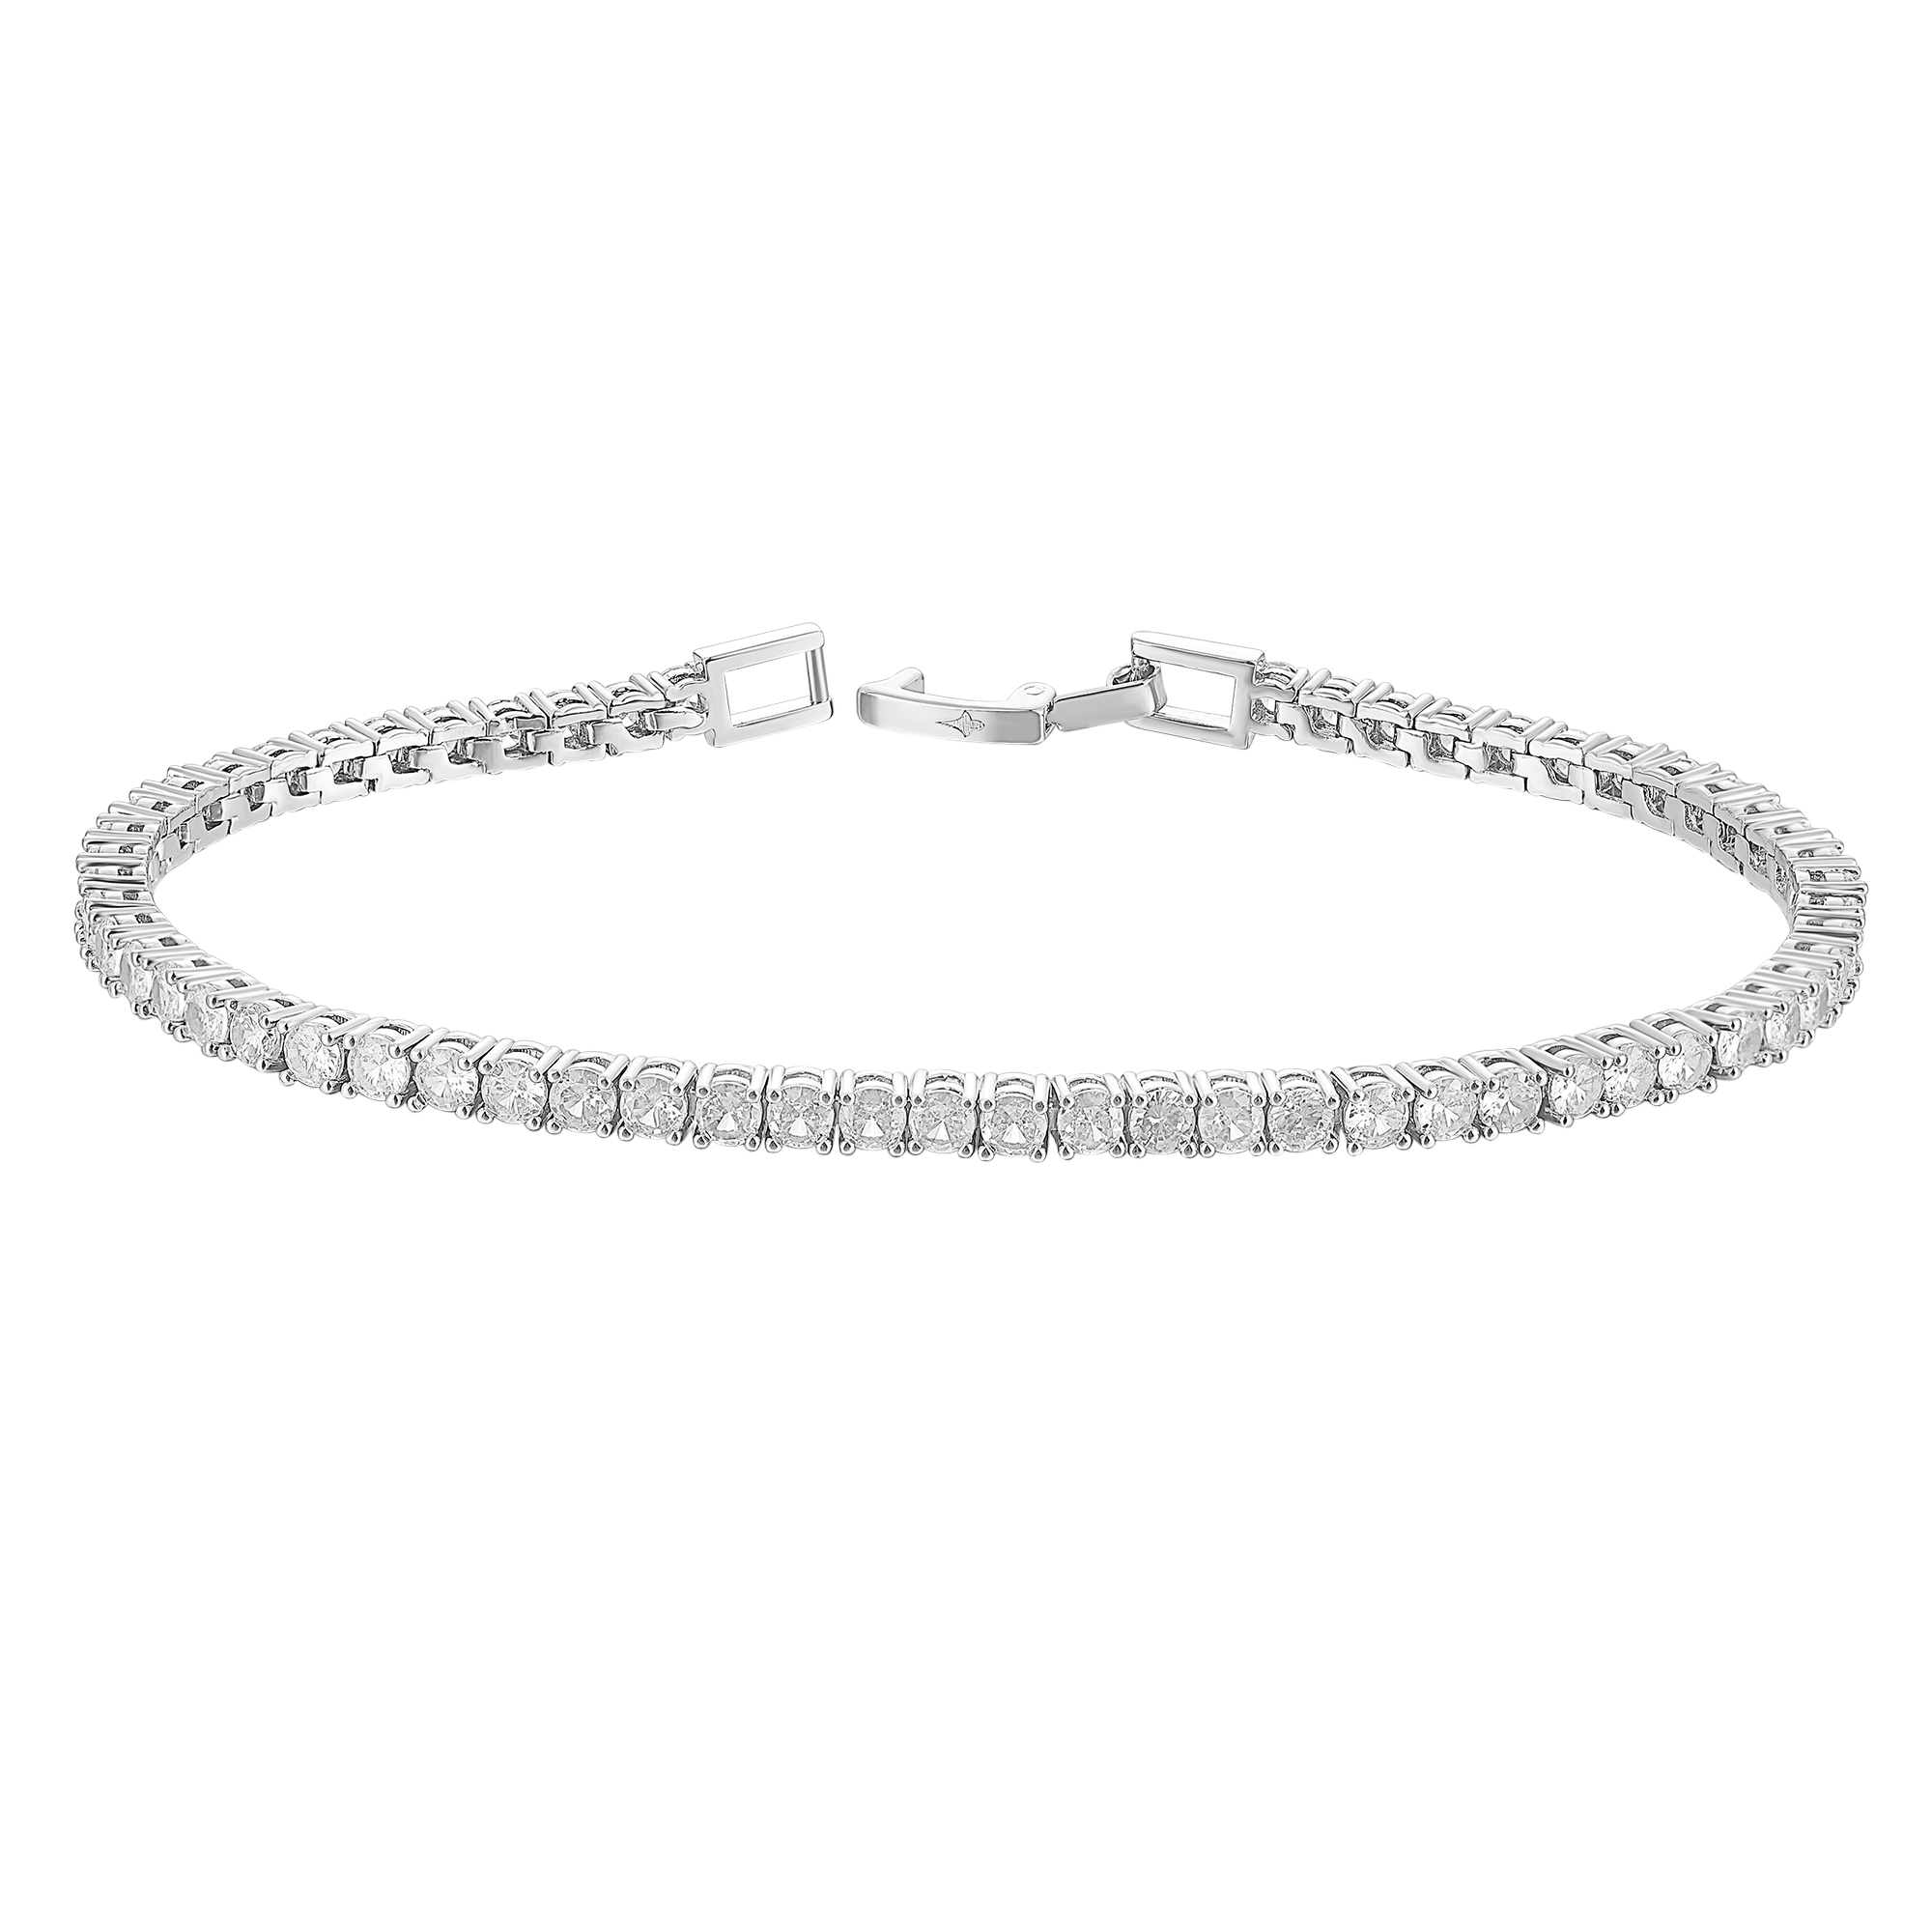 Women's Tennis Bracelet - White Gold